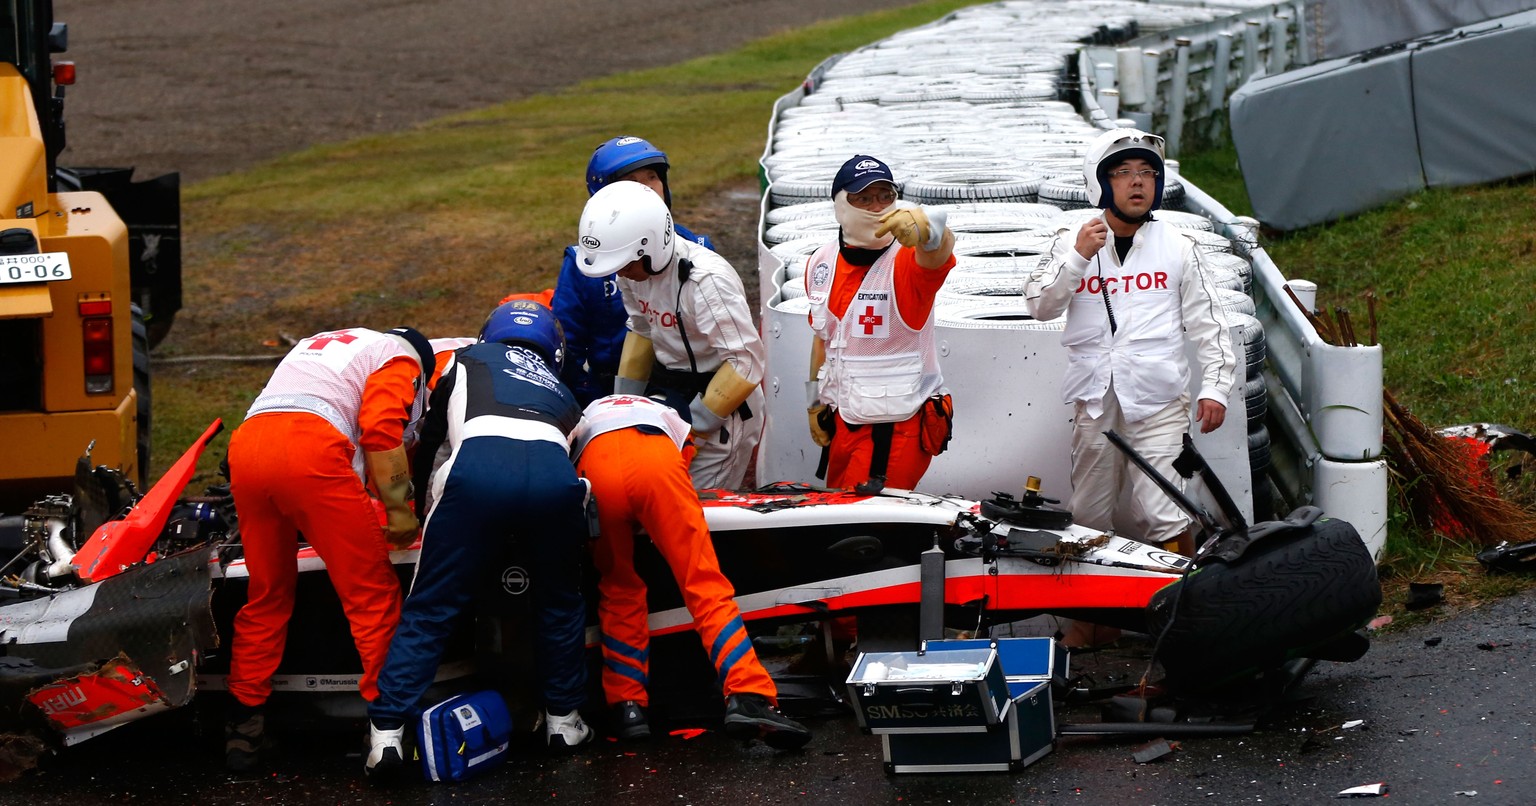 Bereits unmittelbar nach dem Unfall beginnt der Kampf um das Leben von Jules Bianchi.